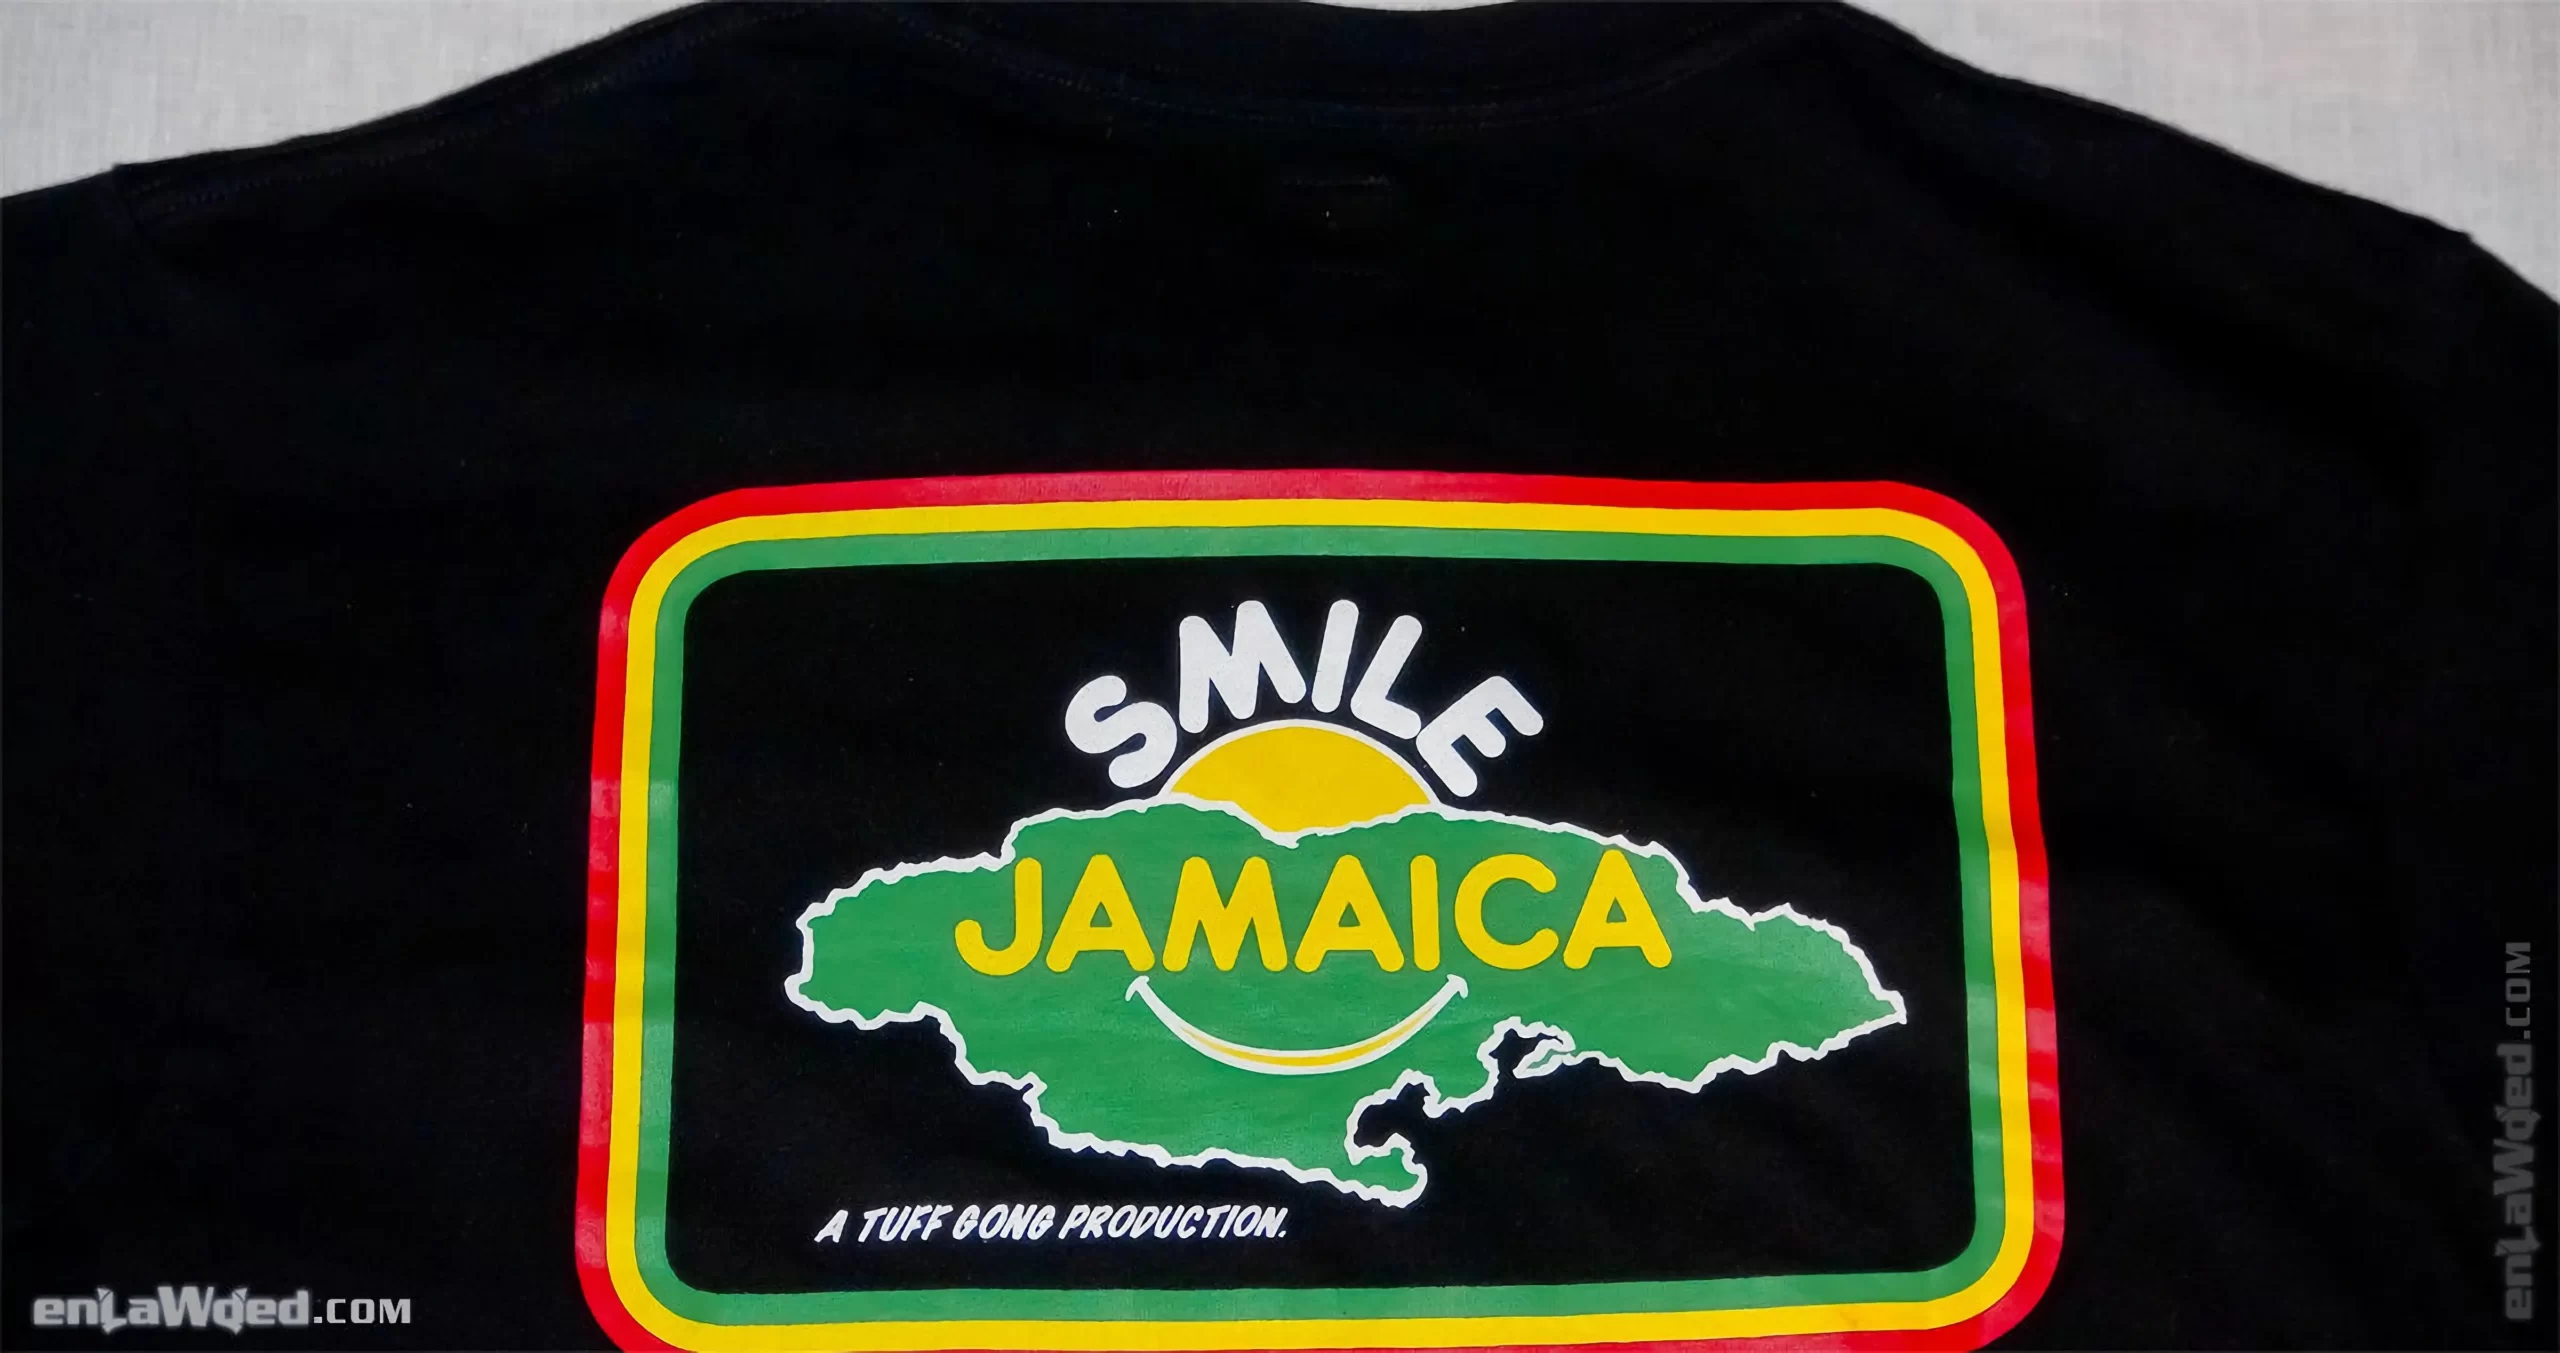 Men’s 2007 Bob Marley SMILE Tuff Gong T-Shirt by Adidas: Fine (EnLawded.com file #lmch6az1zo2xgs7g2y8)